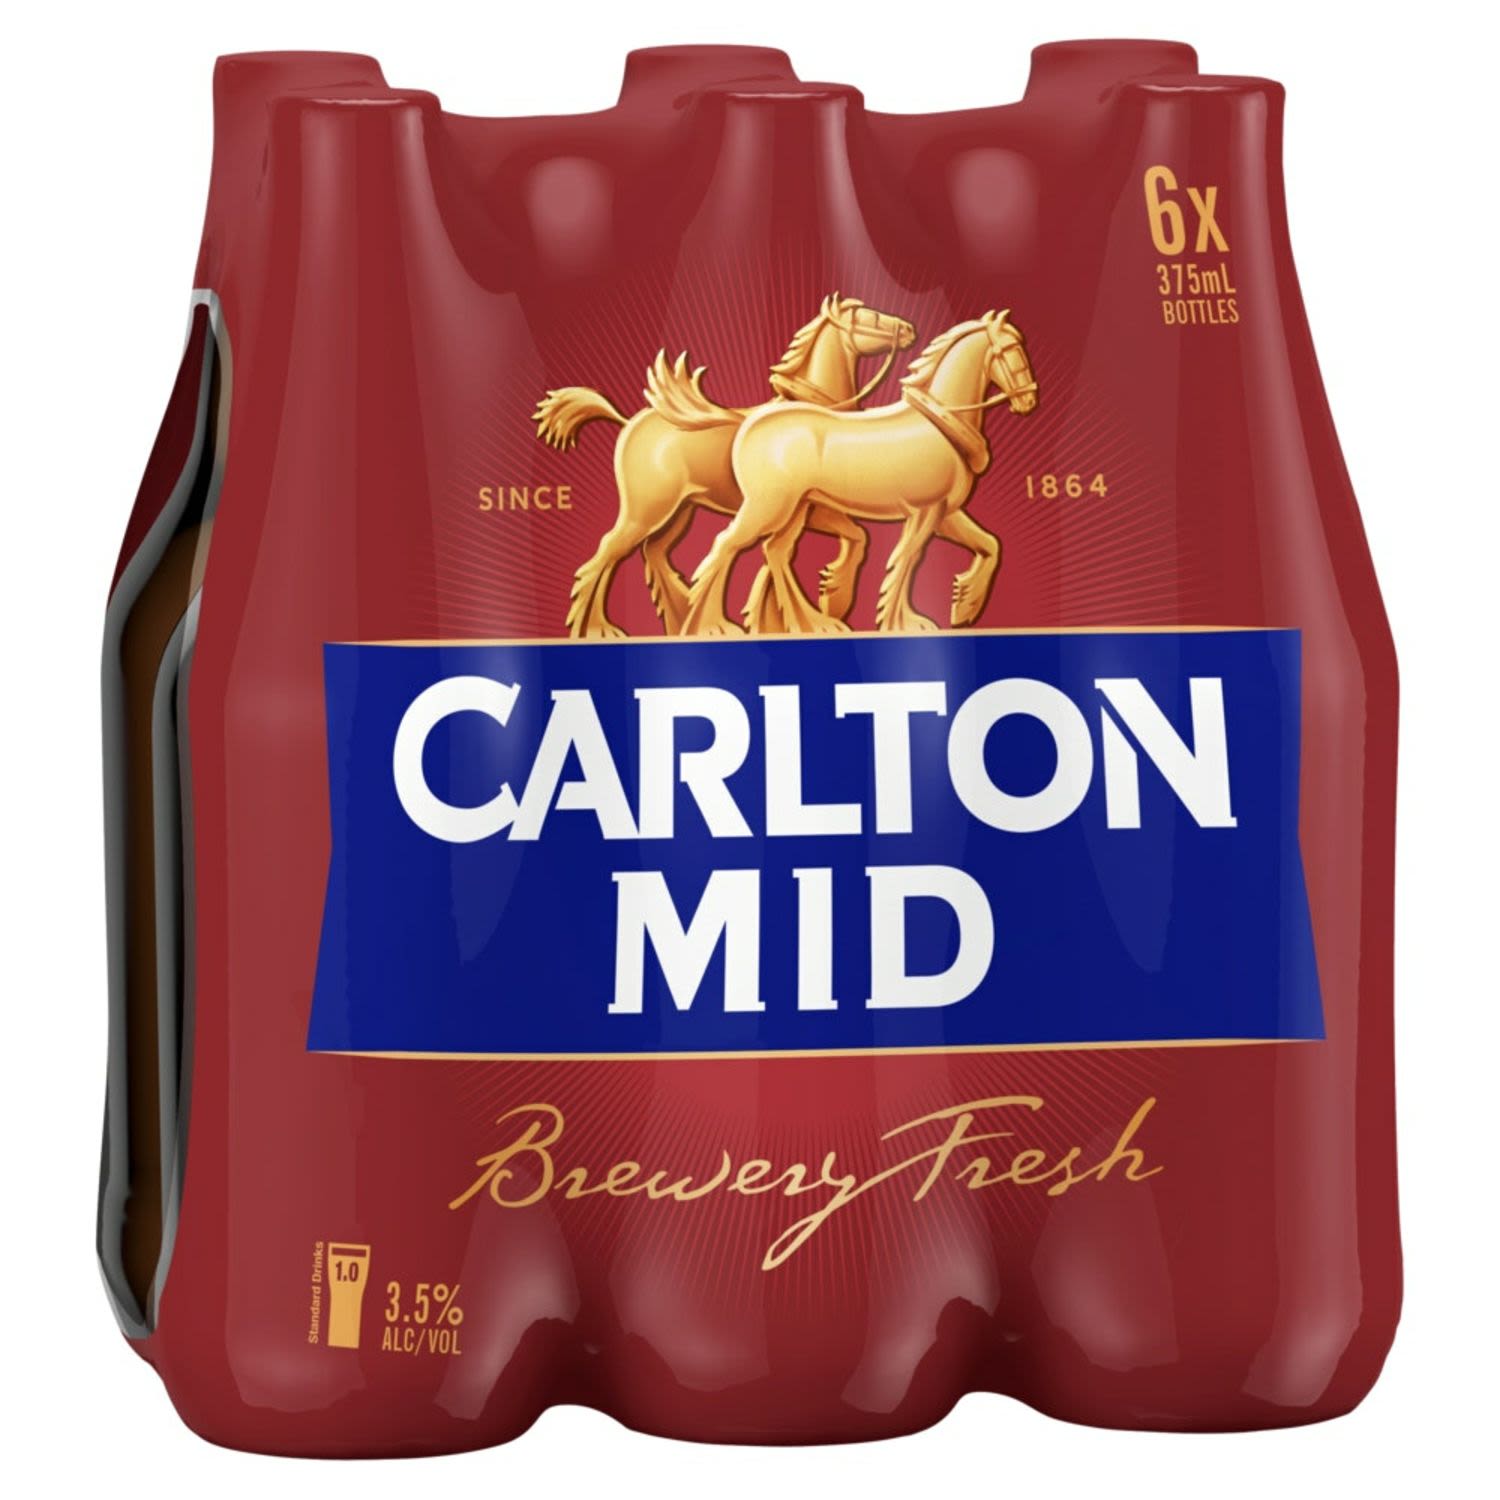 Carlton Mid Bottle 375mL 6 Pack